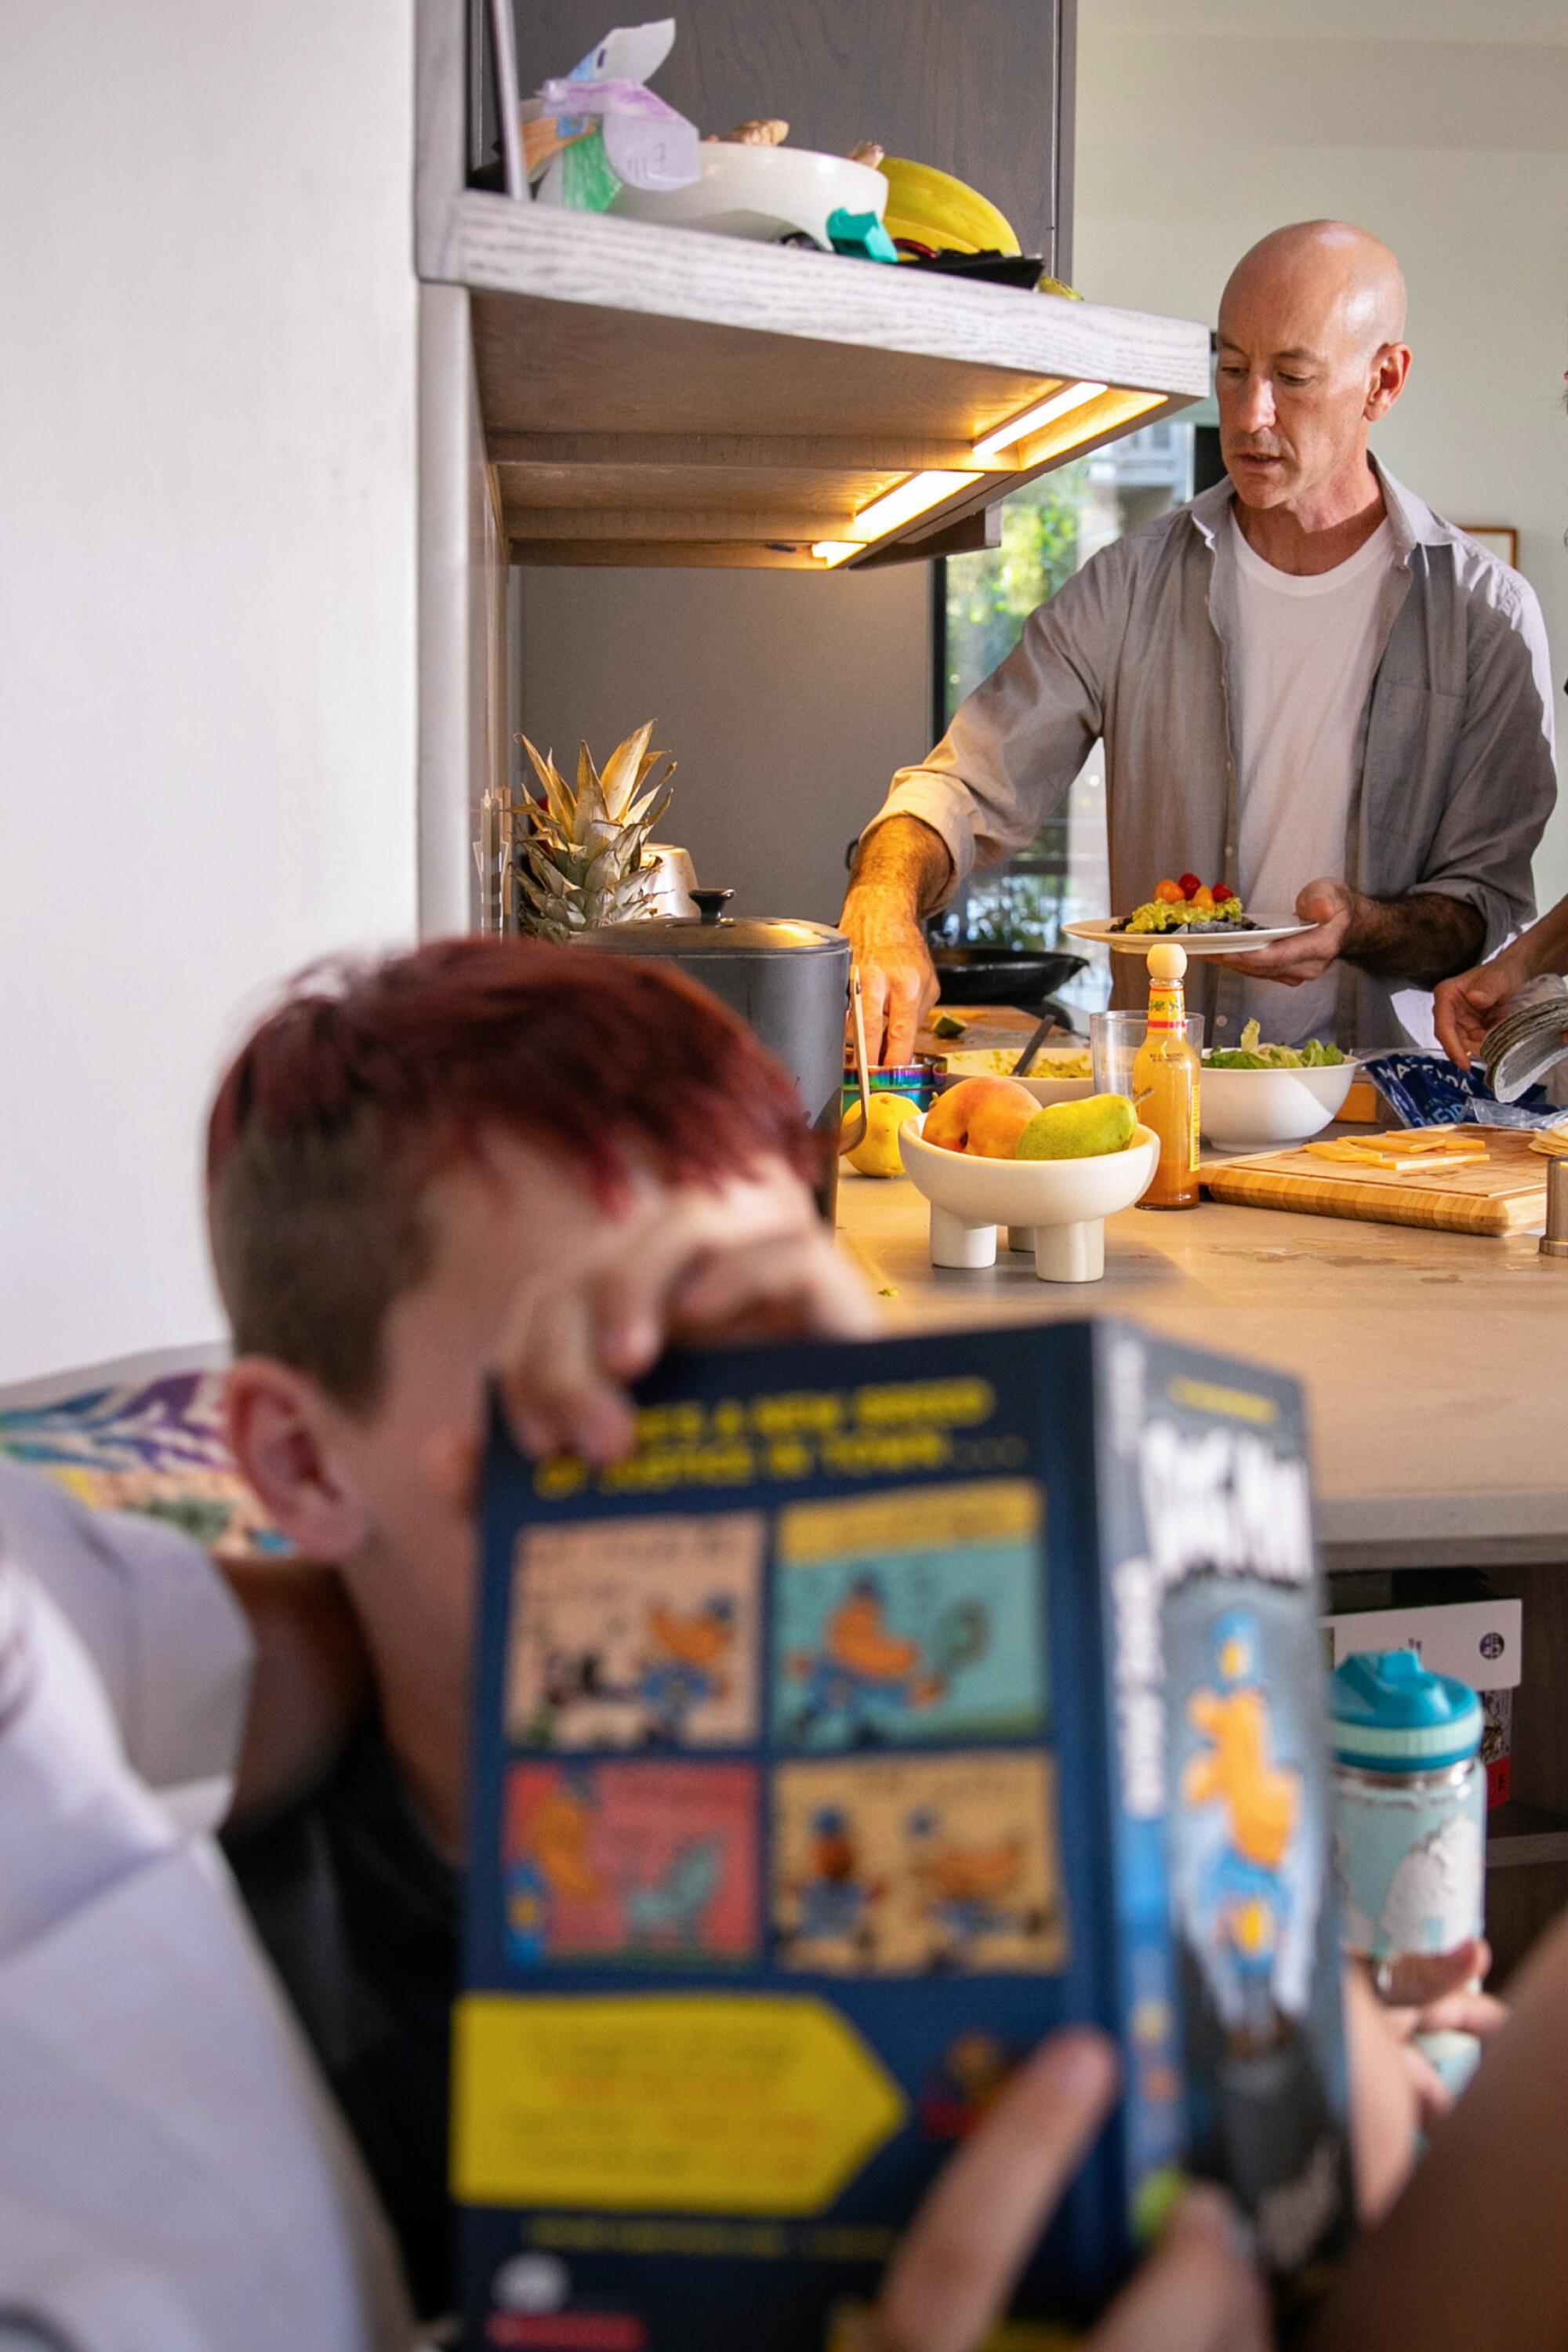 Một người đàn ông chuẩn bị bữa tối trong bếp khi một đứa trẻ đọc sách ở góc gần đó.